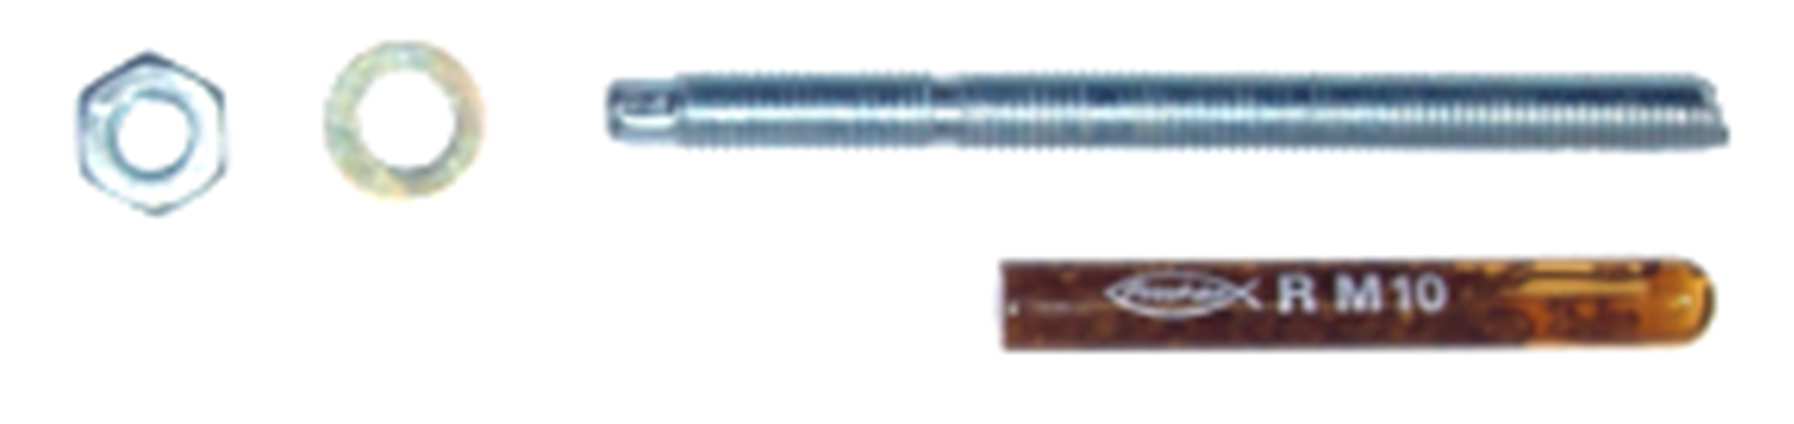 2.2013 rozměr kotevního šroubu M16 165 mm MKC1M16 Kotva chemická M16 technické údaje M8 M10 M12 M16 Ø kotvy [mm] 8 10 12 16 Ø vrtáku [mm] 10 12 14 18 min.